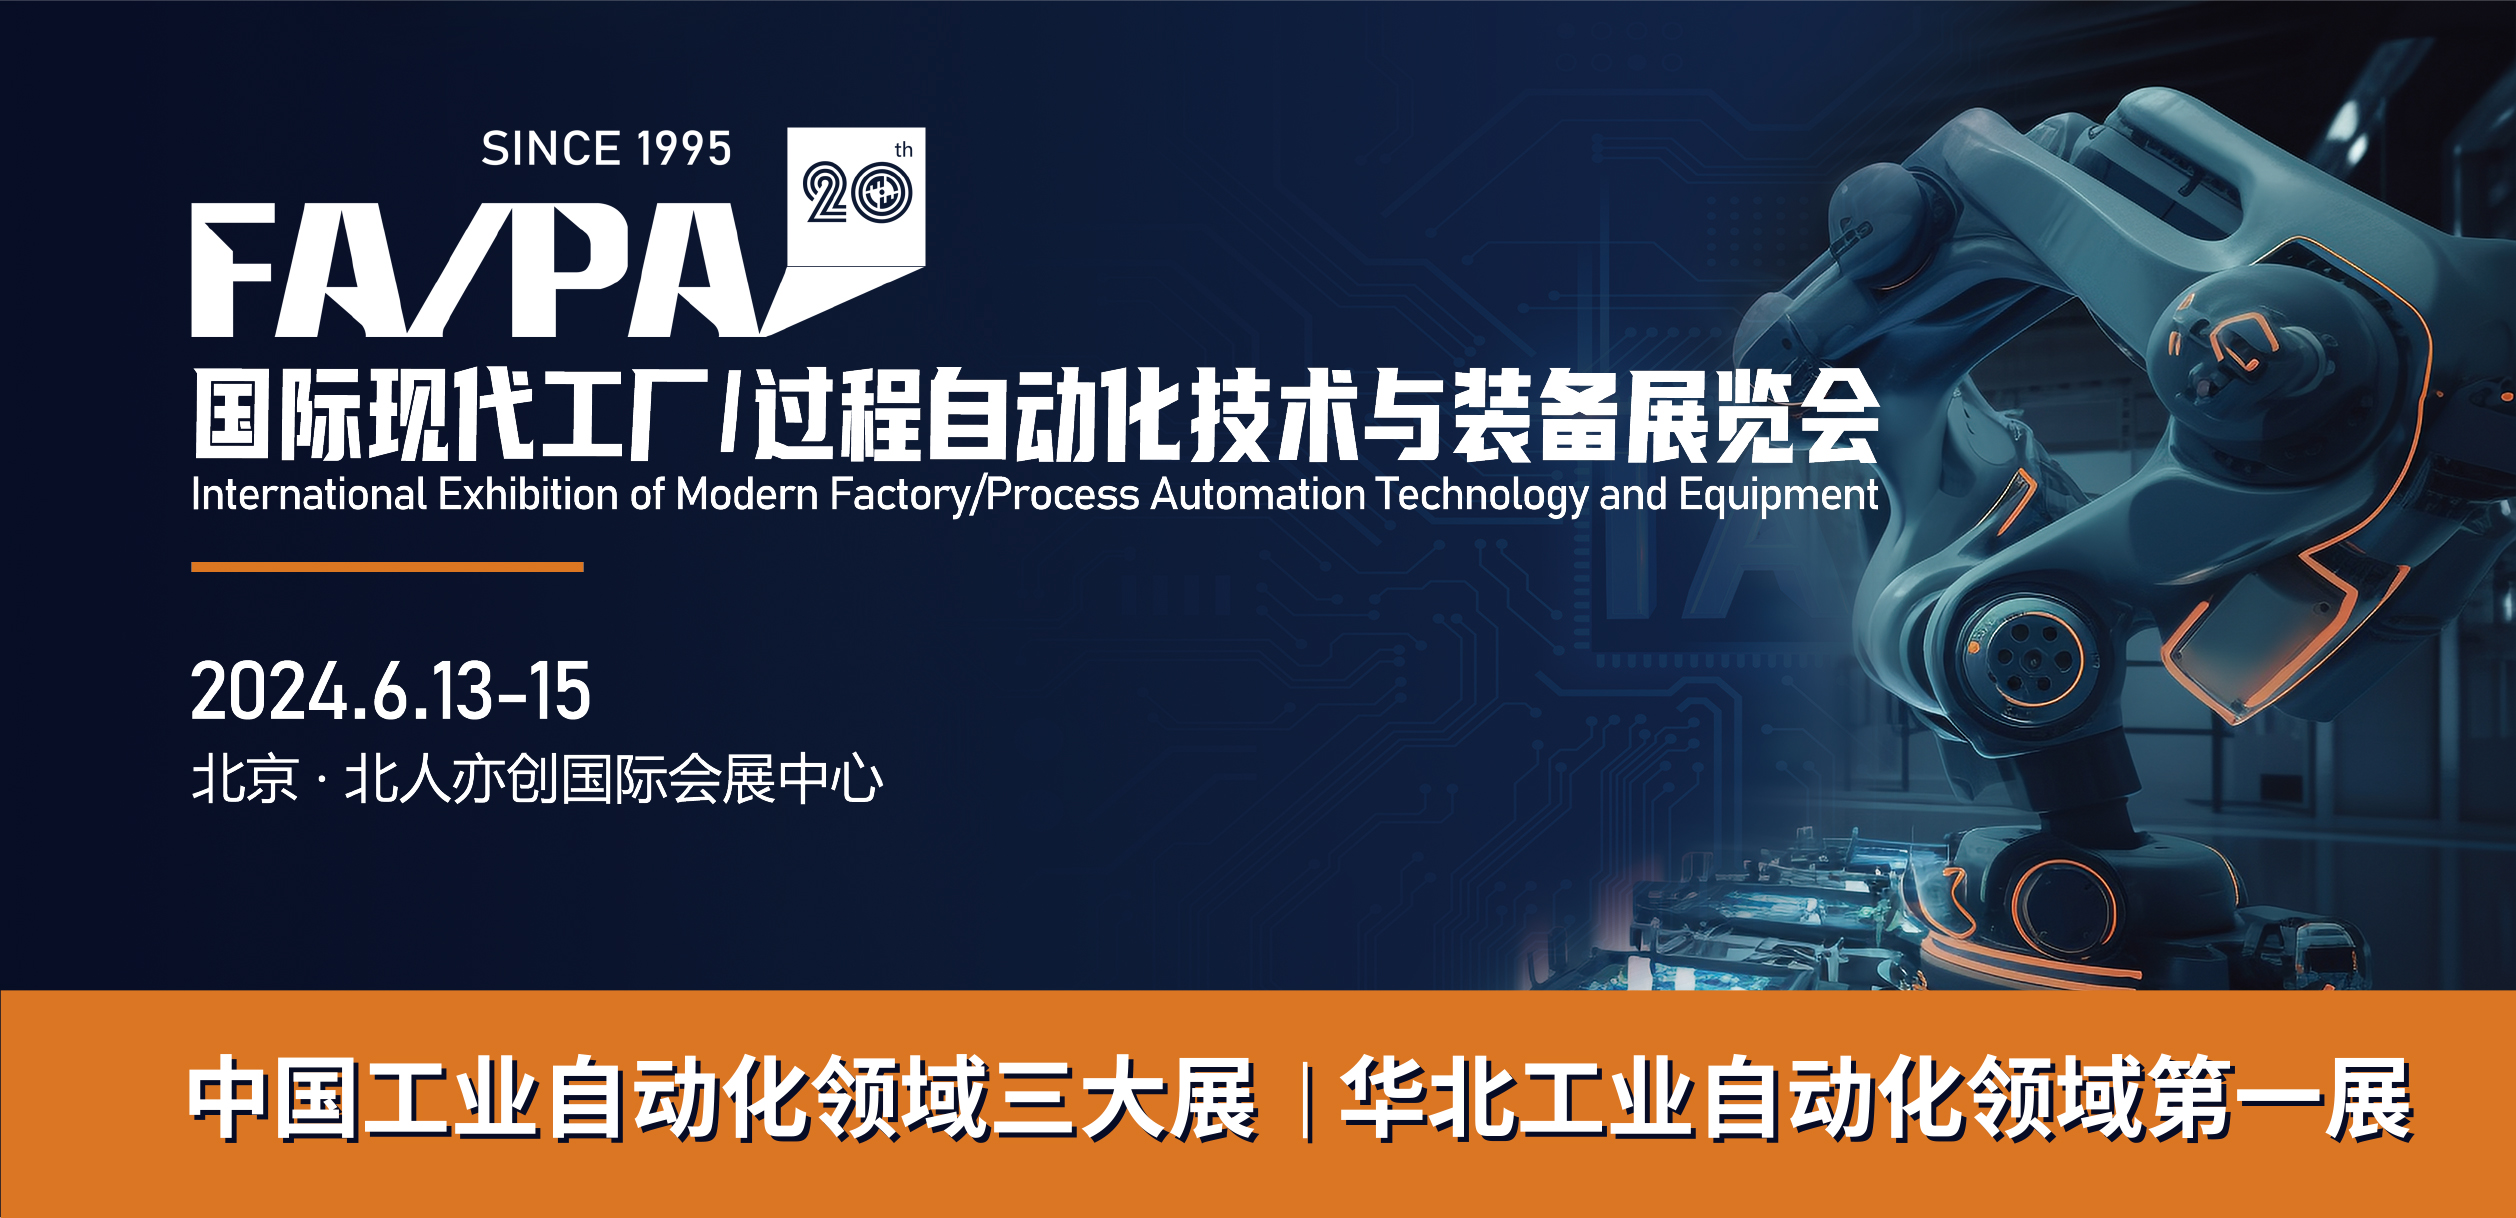 第20届国际现代工厂/过程自动化技术与装备展览会（FA/PA 2024）在北京举行